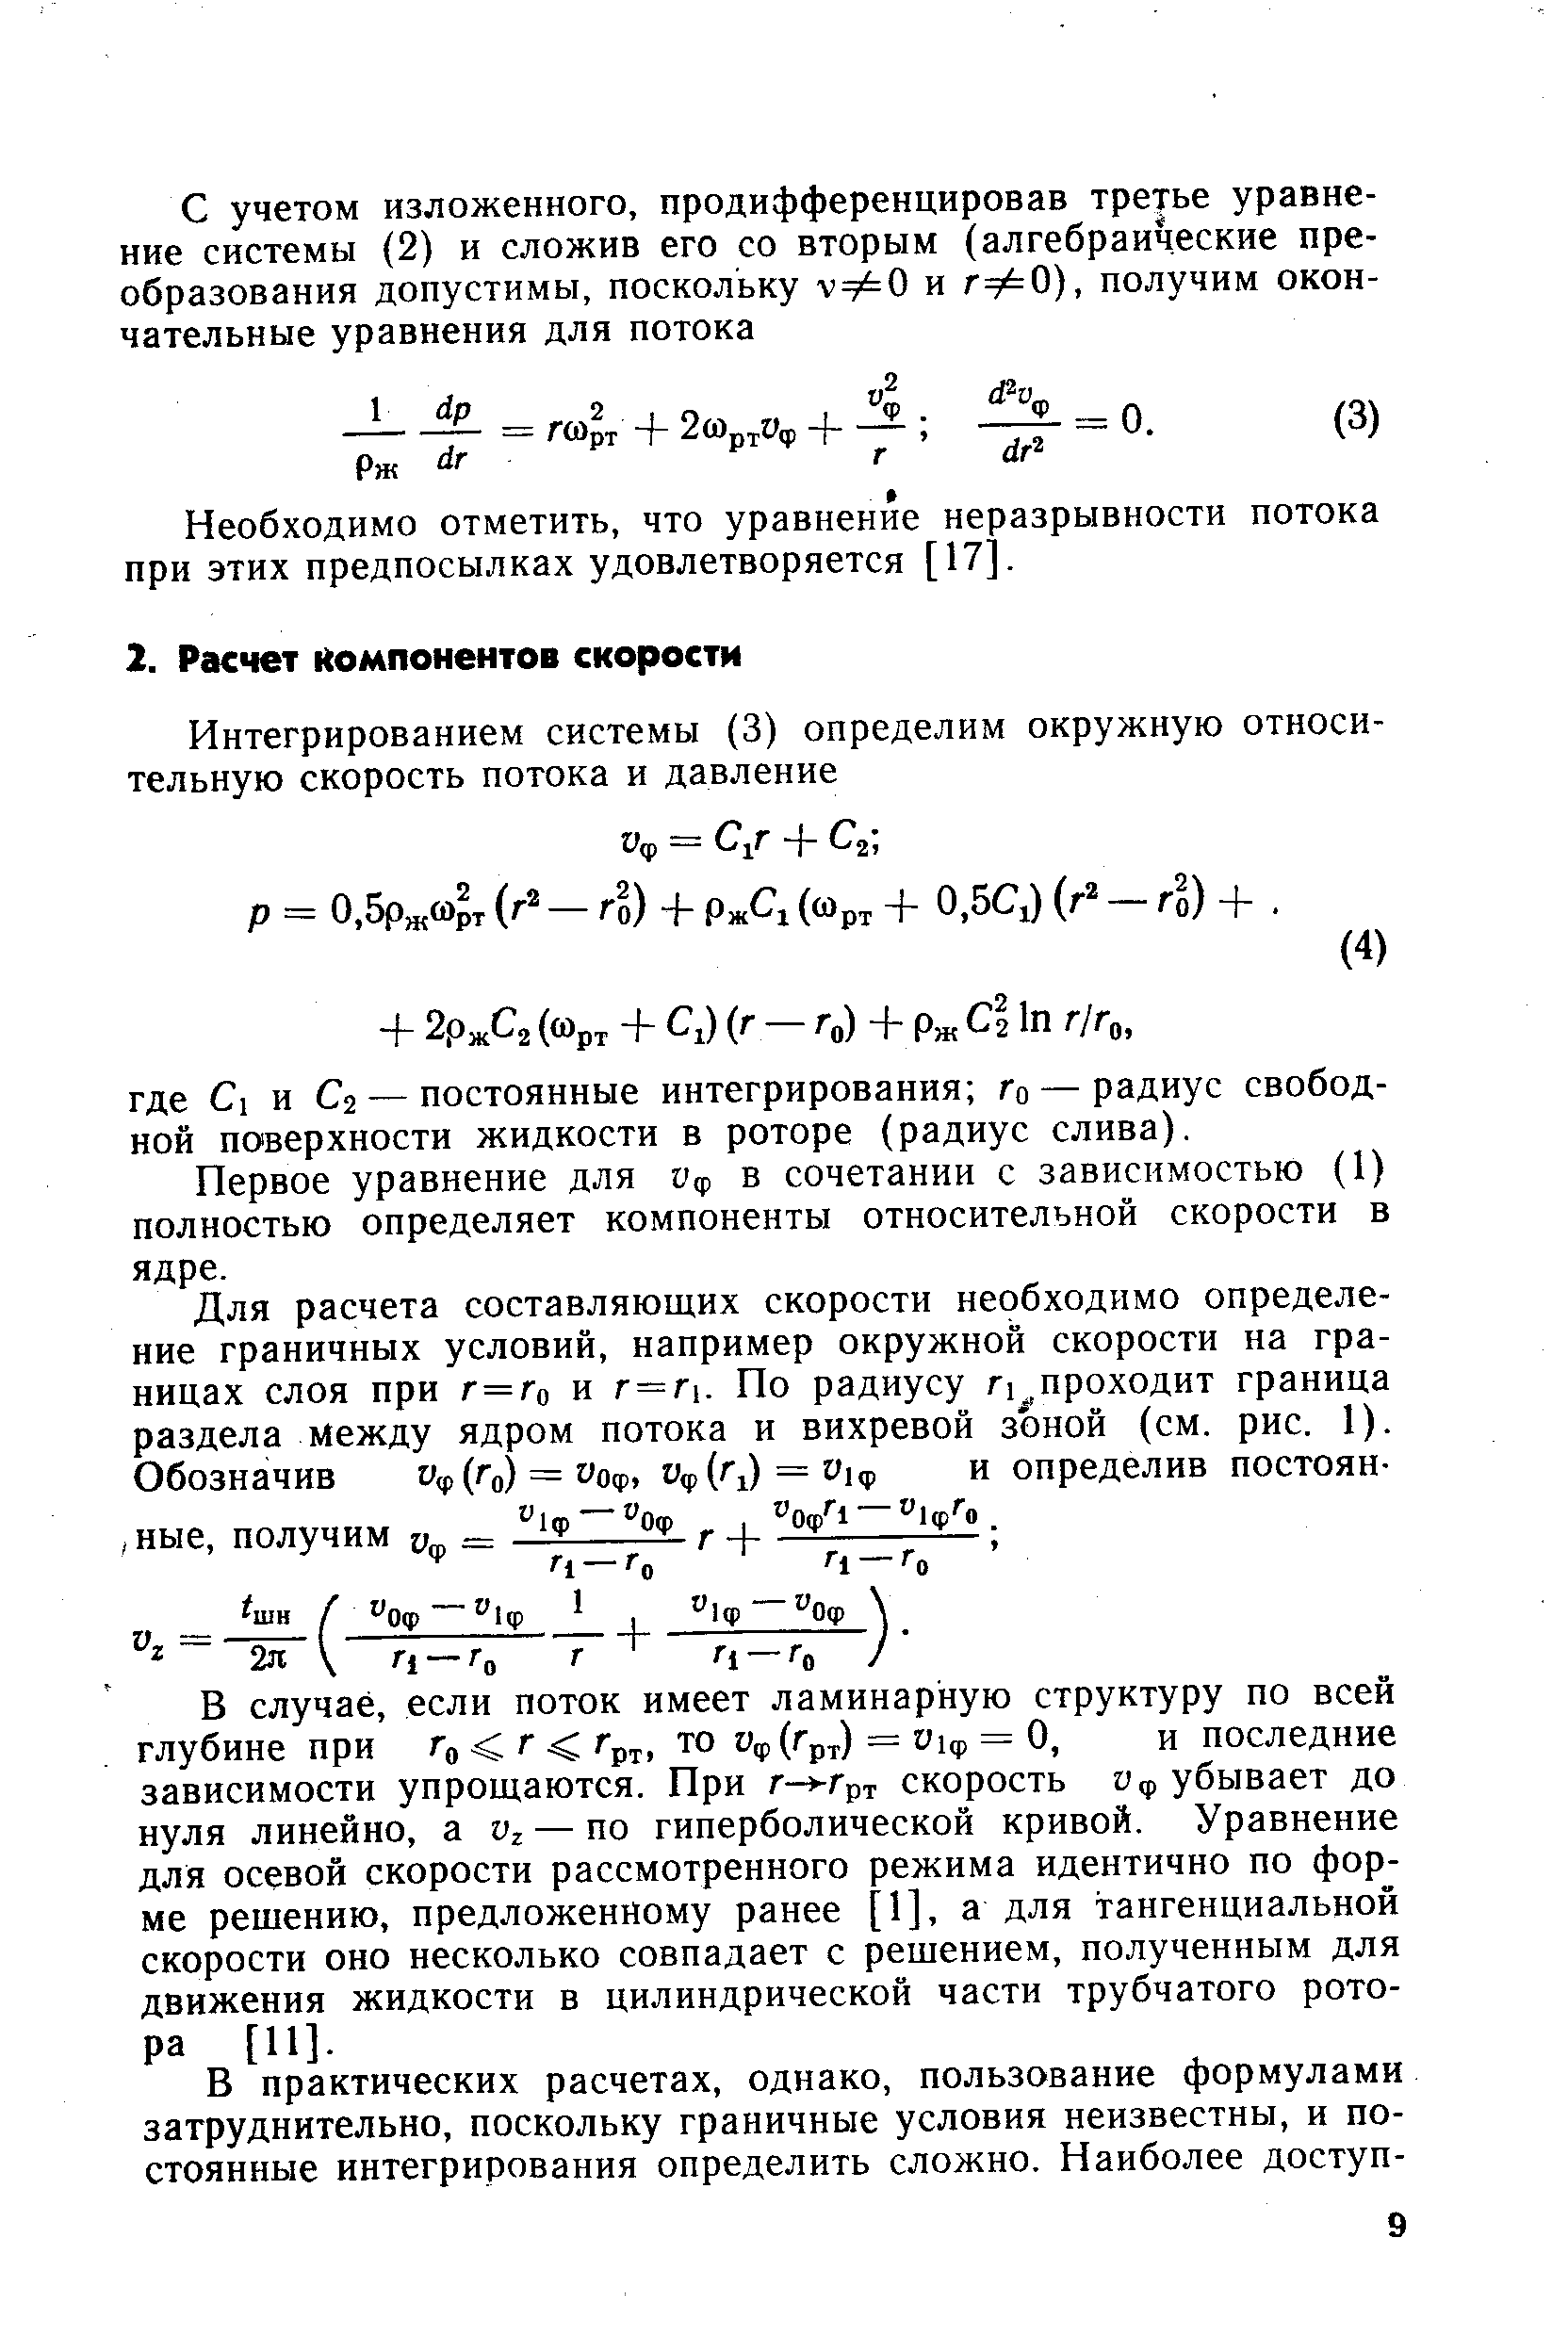 Первое уравнение для Уф в сочетании с зависимостью (1) полностью определяет компоненты относительной скорости в ядре.